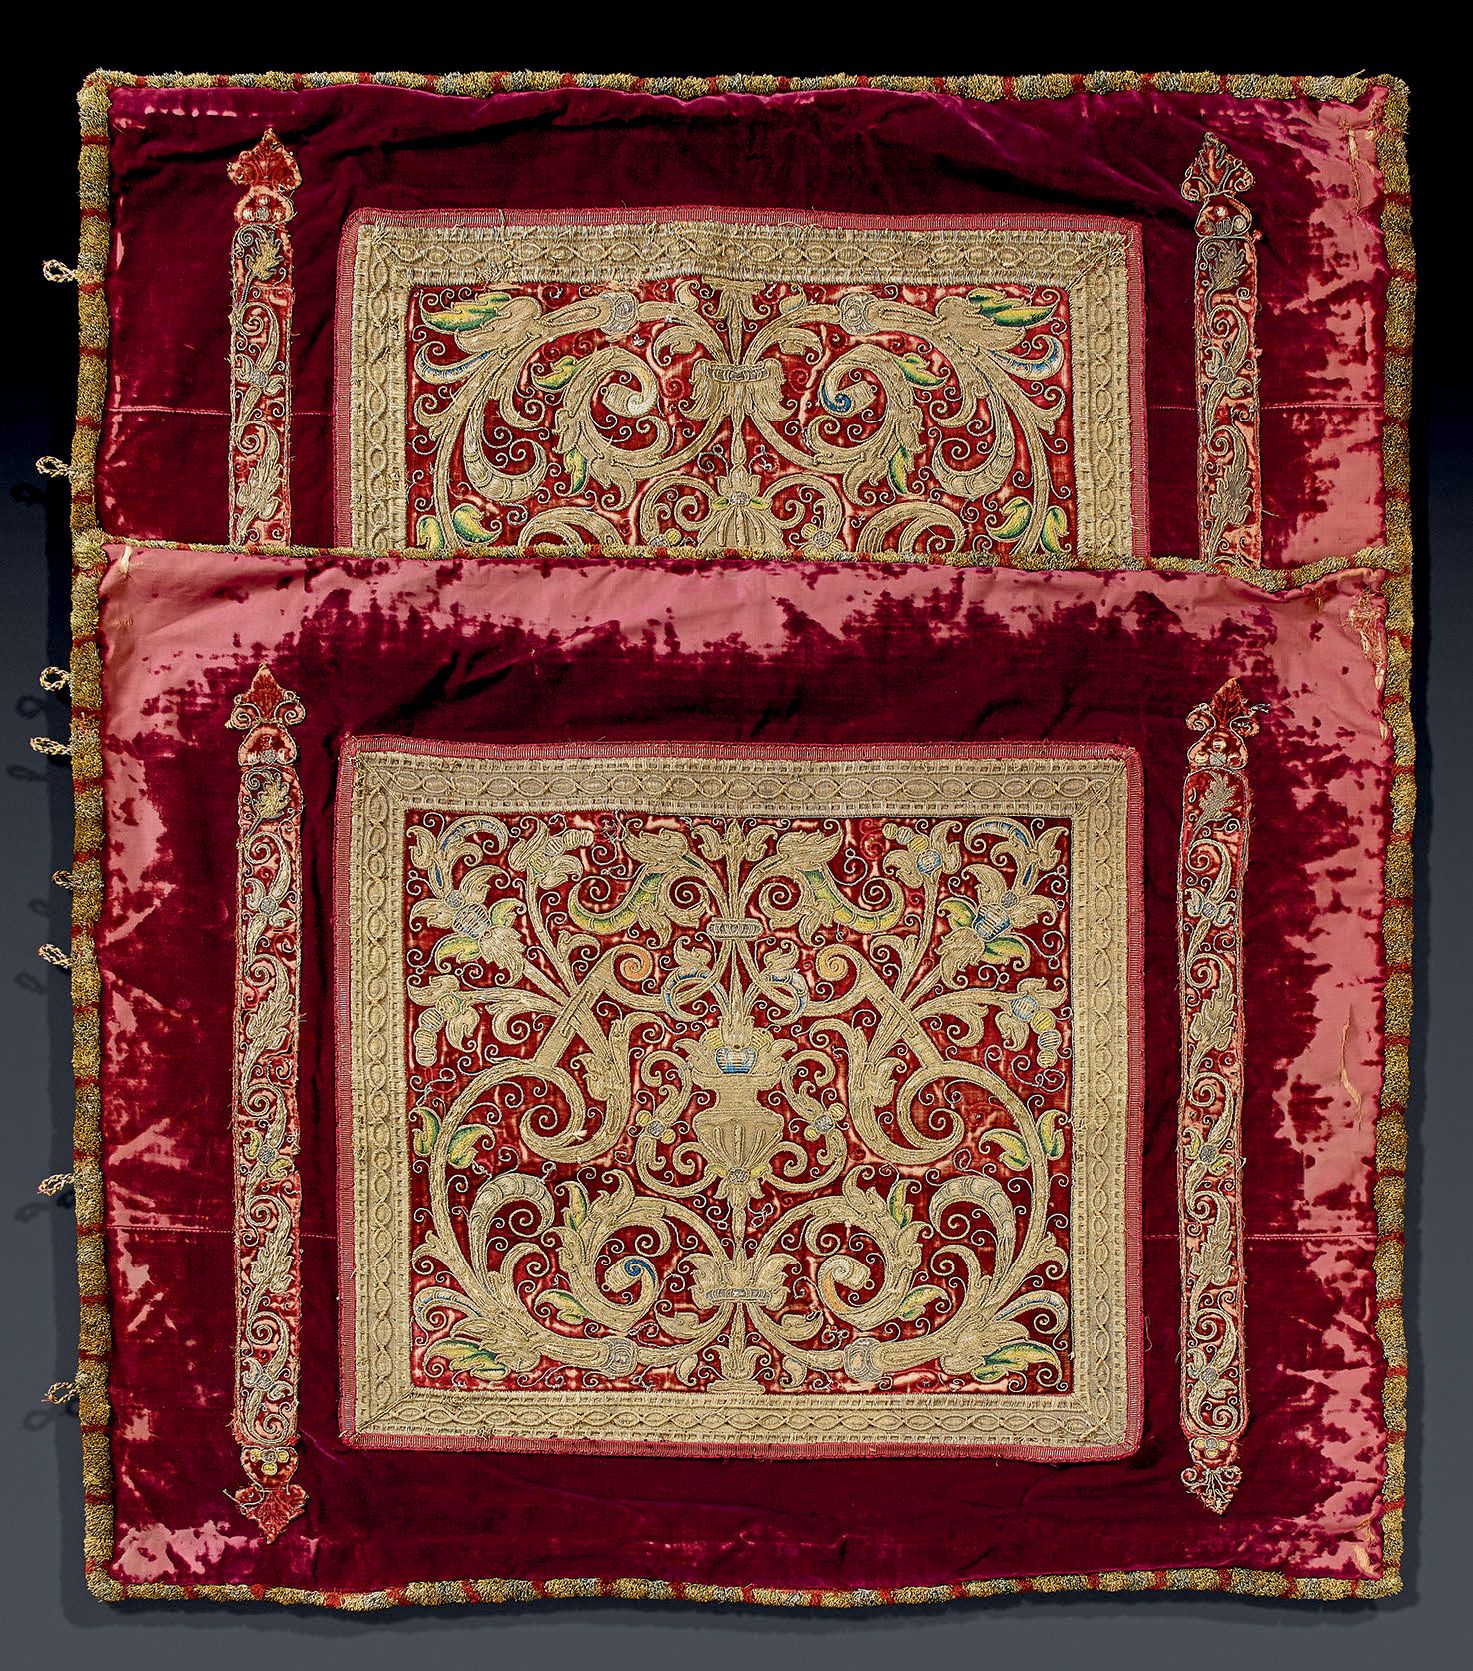 Null 两件大型天鹅绒和金绣瓦片或垫子套，意大利或西班牙，16世纪下半叶。深红色的天鹅绒装饰着dalmatic orphreys的面板，两侧是优雅的黄金刺绣辫&hellip;